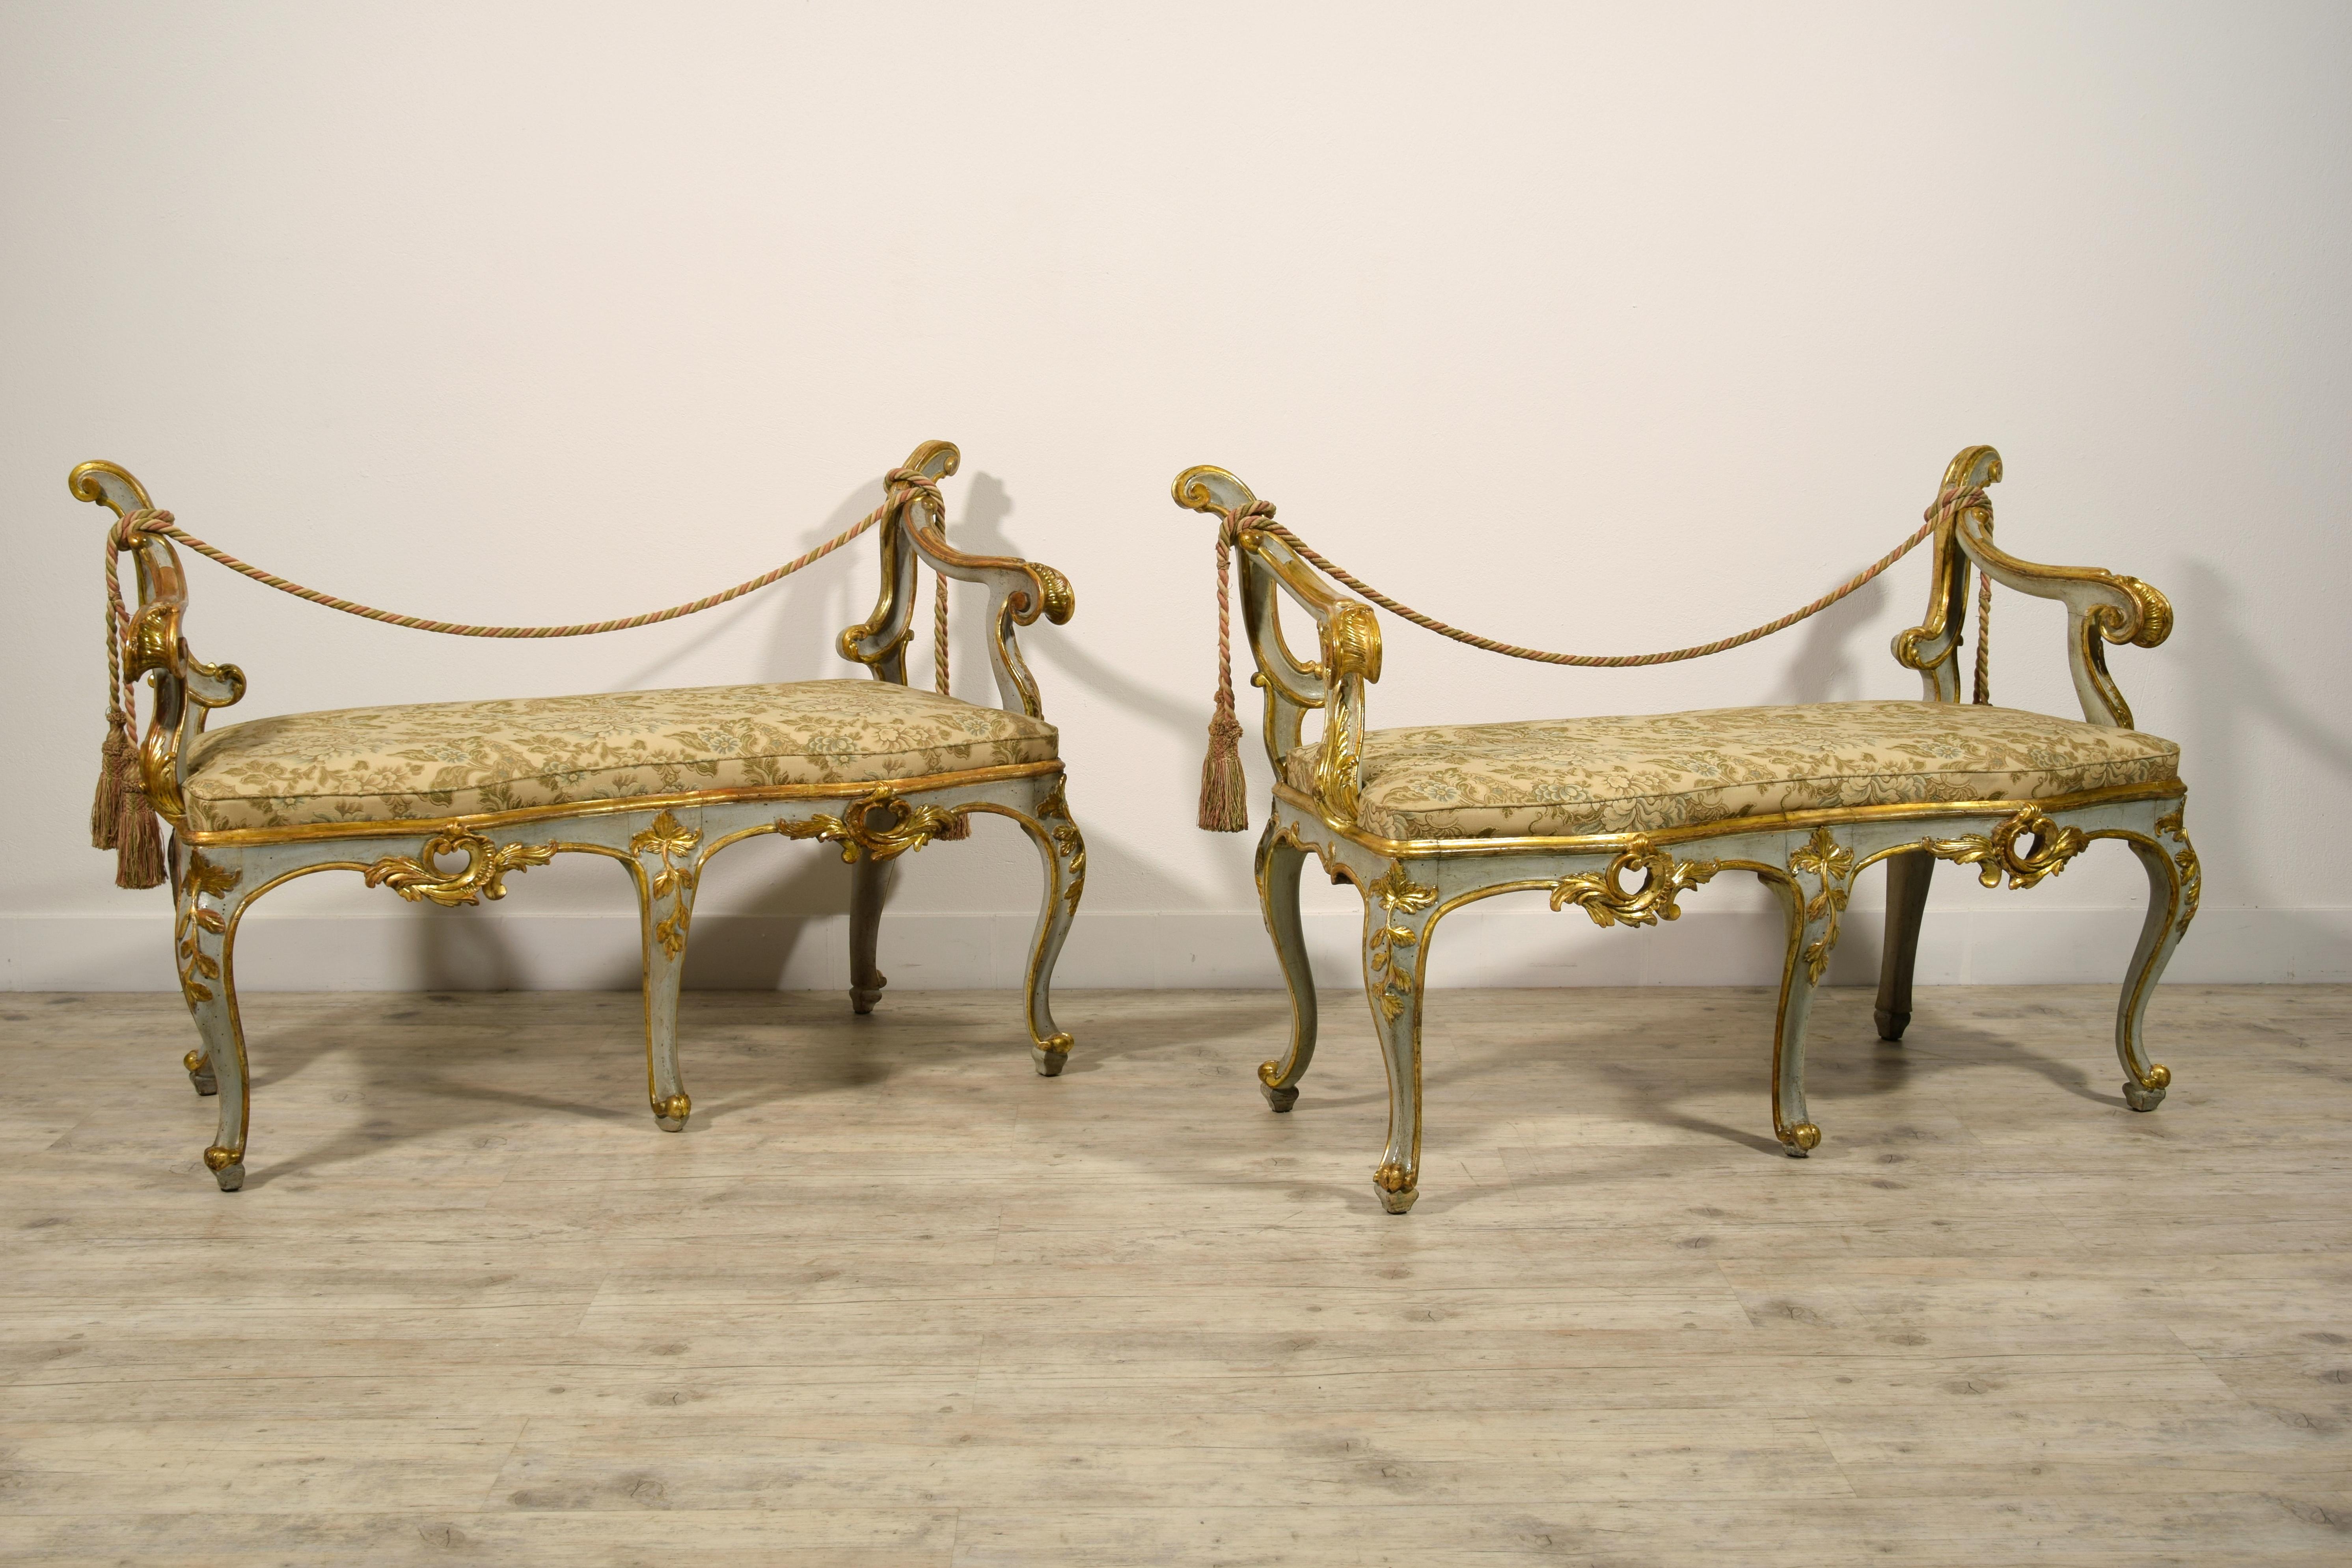 18ème siècle, paire de bancs baroques italiens en bois laqué et doré 

Cette paire de bancs baroques a été fabriquée à Rome, en Italie, dans la seconde moitié du XVIIIe siècle.
Leur structure en bois est entièrement sculptée, laquée et dorée à la